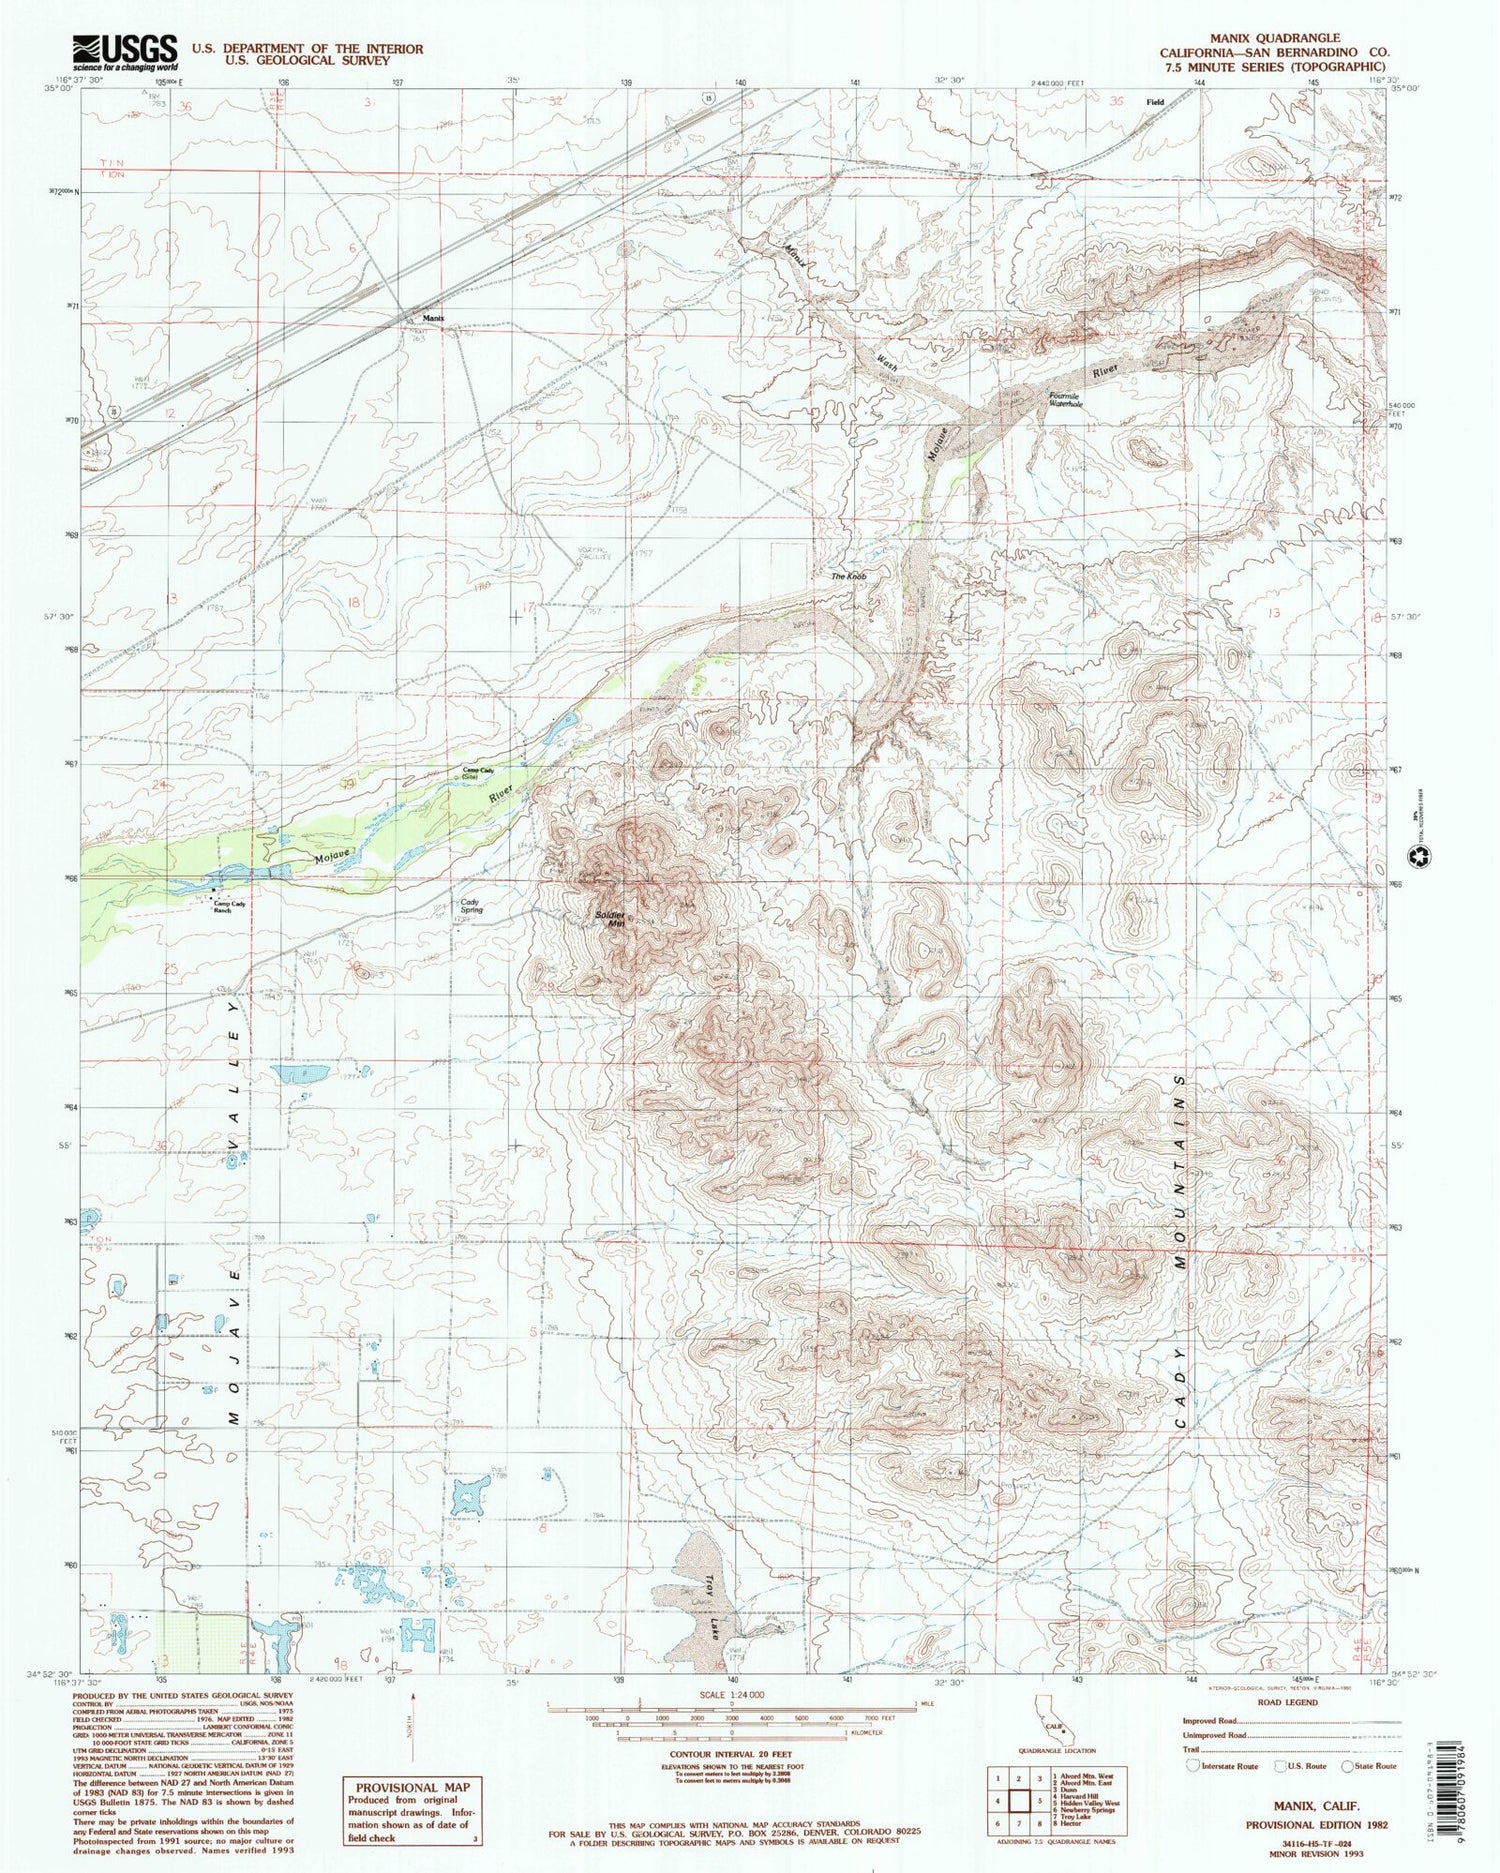 Classic USGS Manix California 7.5'x7.5' Topo Map Image